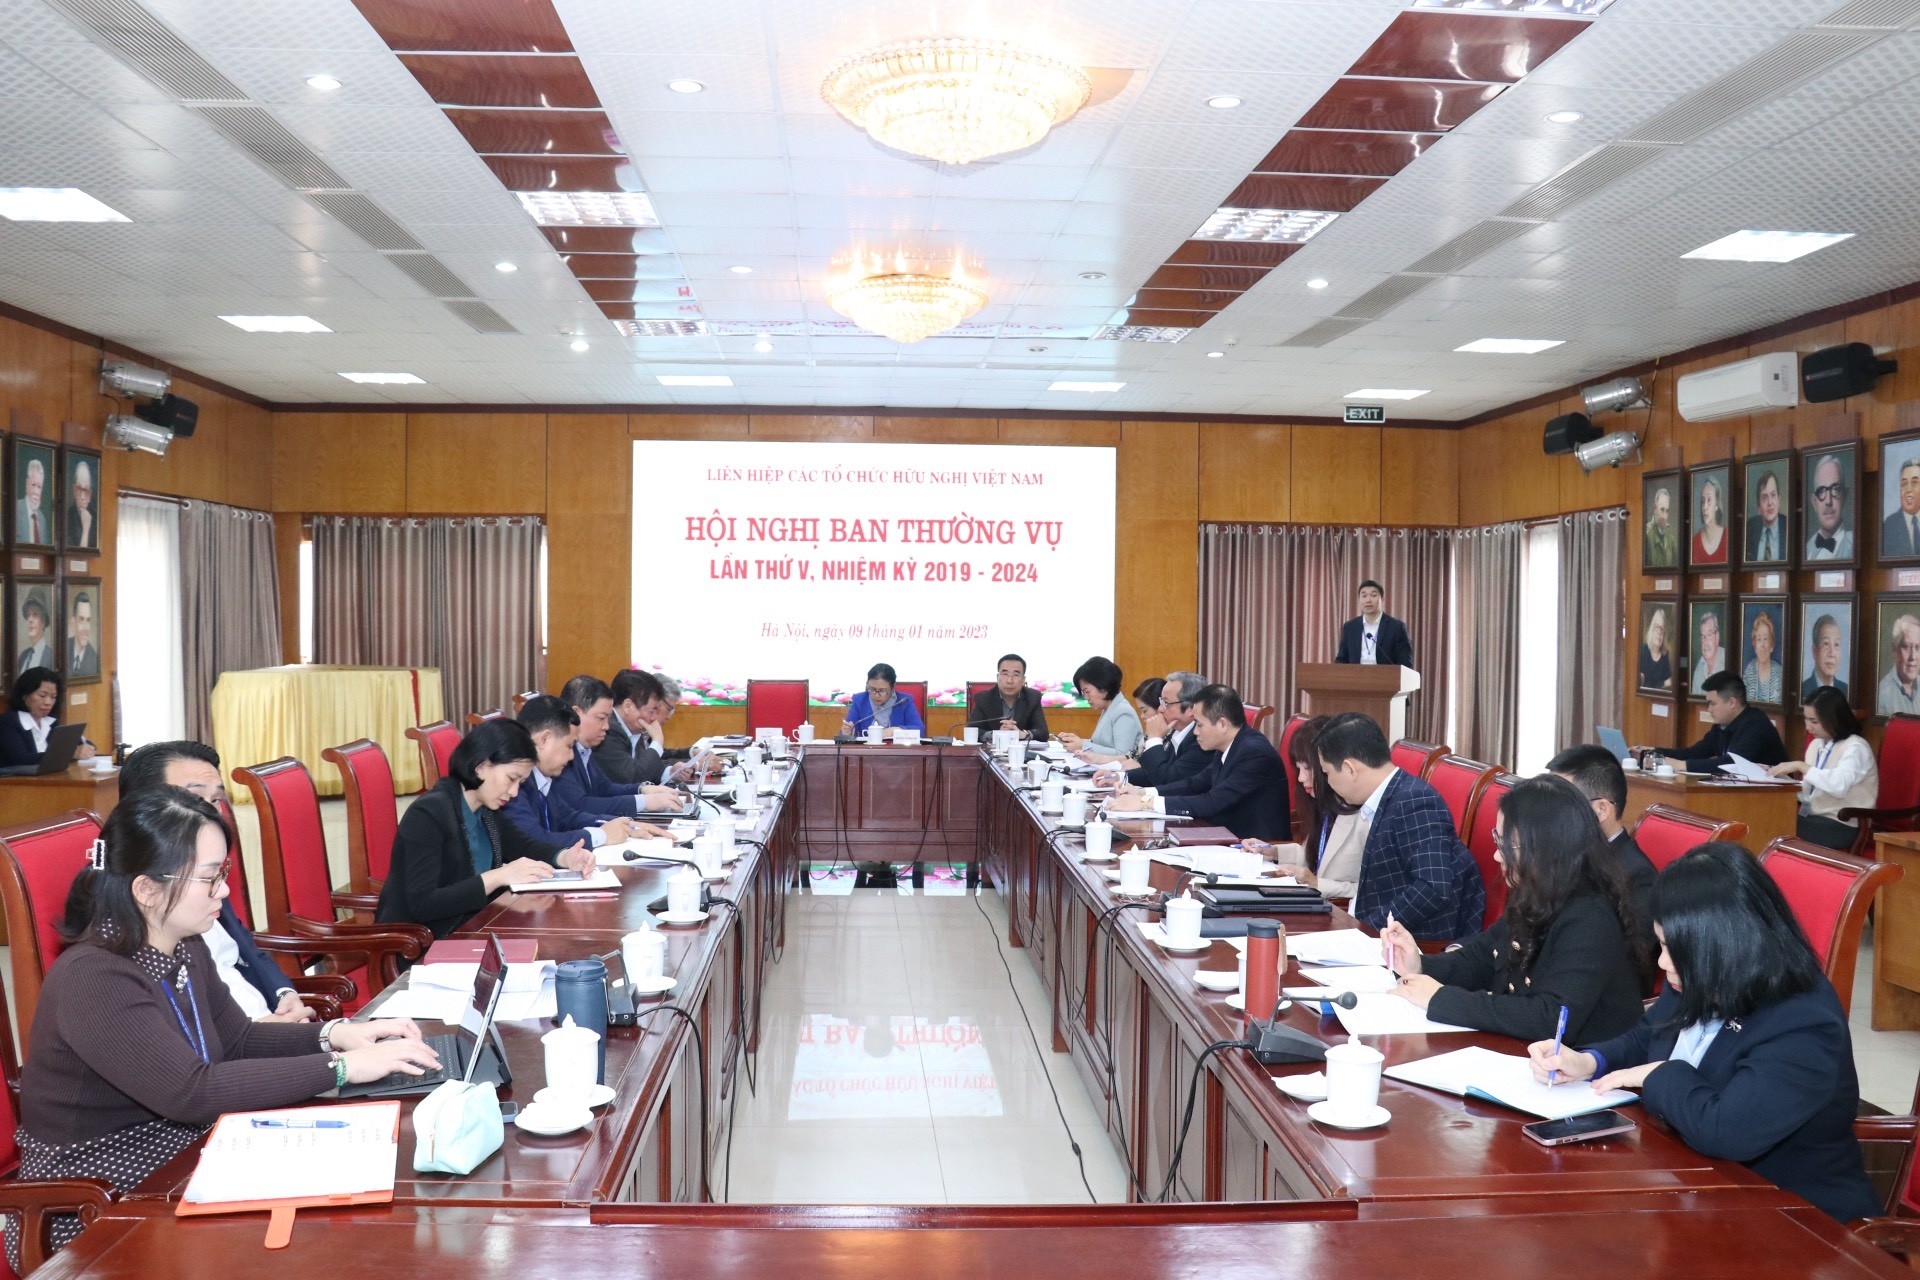 VUFO副主席兼秘书长潘英山在会议上发表VUFO 2022年工作成果及2023年工作方向的报告。（图：秋河）